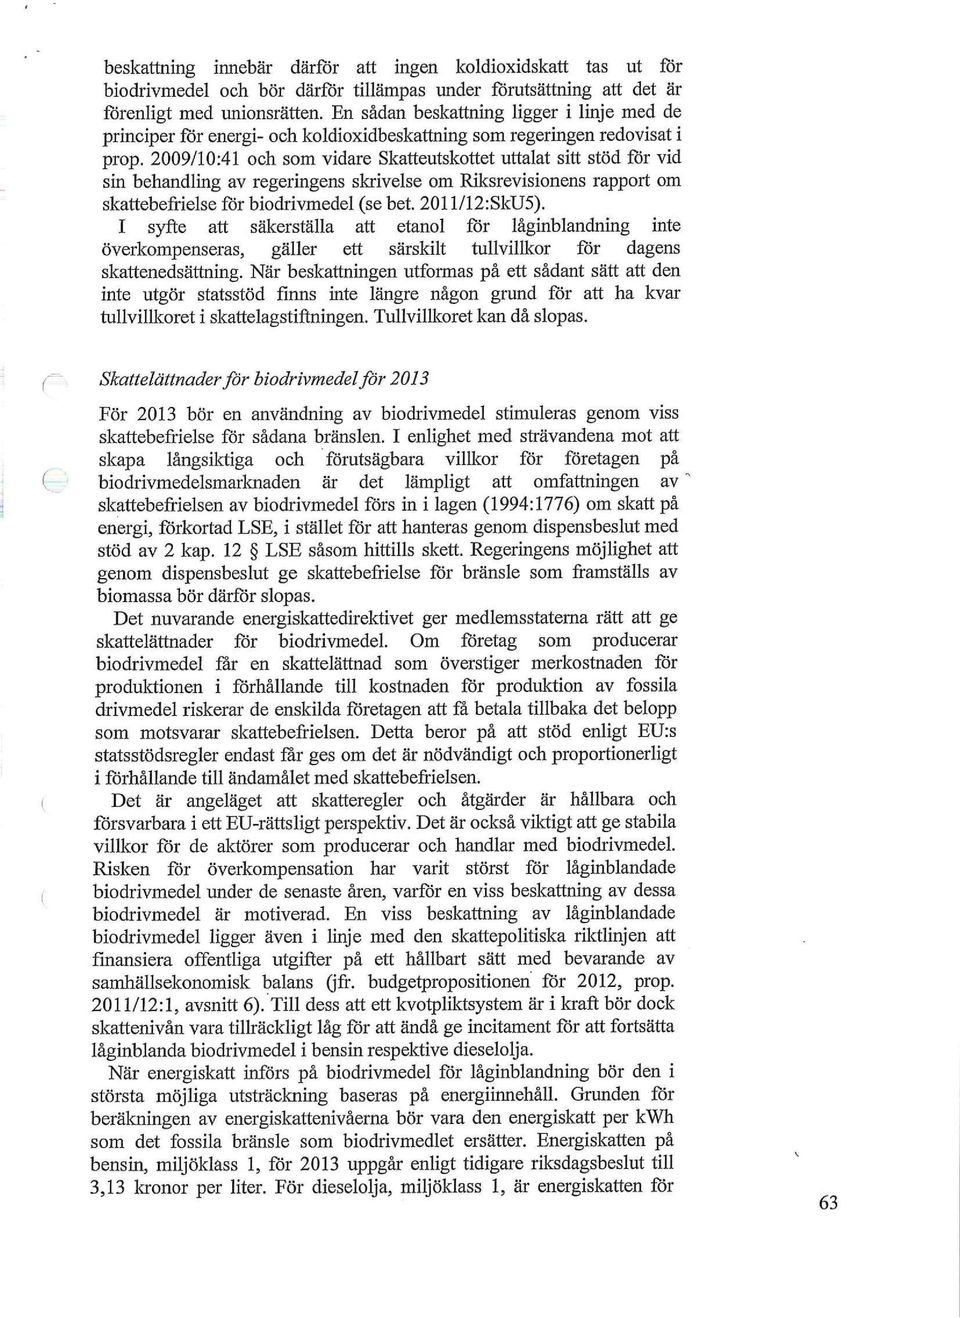 2009/10:41 oeb som vidare Skatteatskottet uttalat sitt stöd for vid sm bebaadlmg av regeringens sl^ivelse om Friksrevisionens rapport om skattebefrielseforbiodrivmedel(sebet. 2011/12:SkD5).